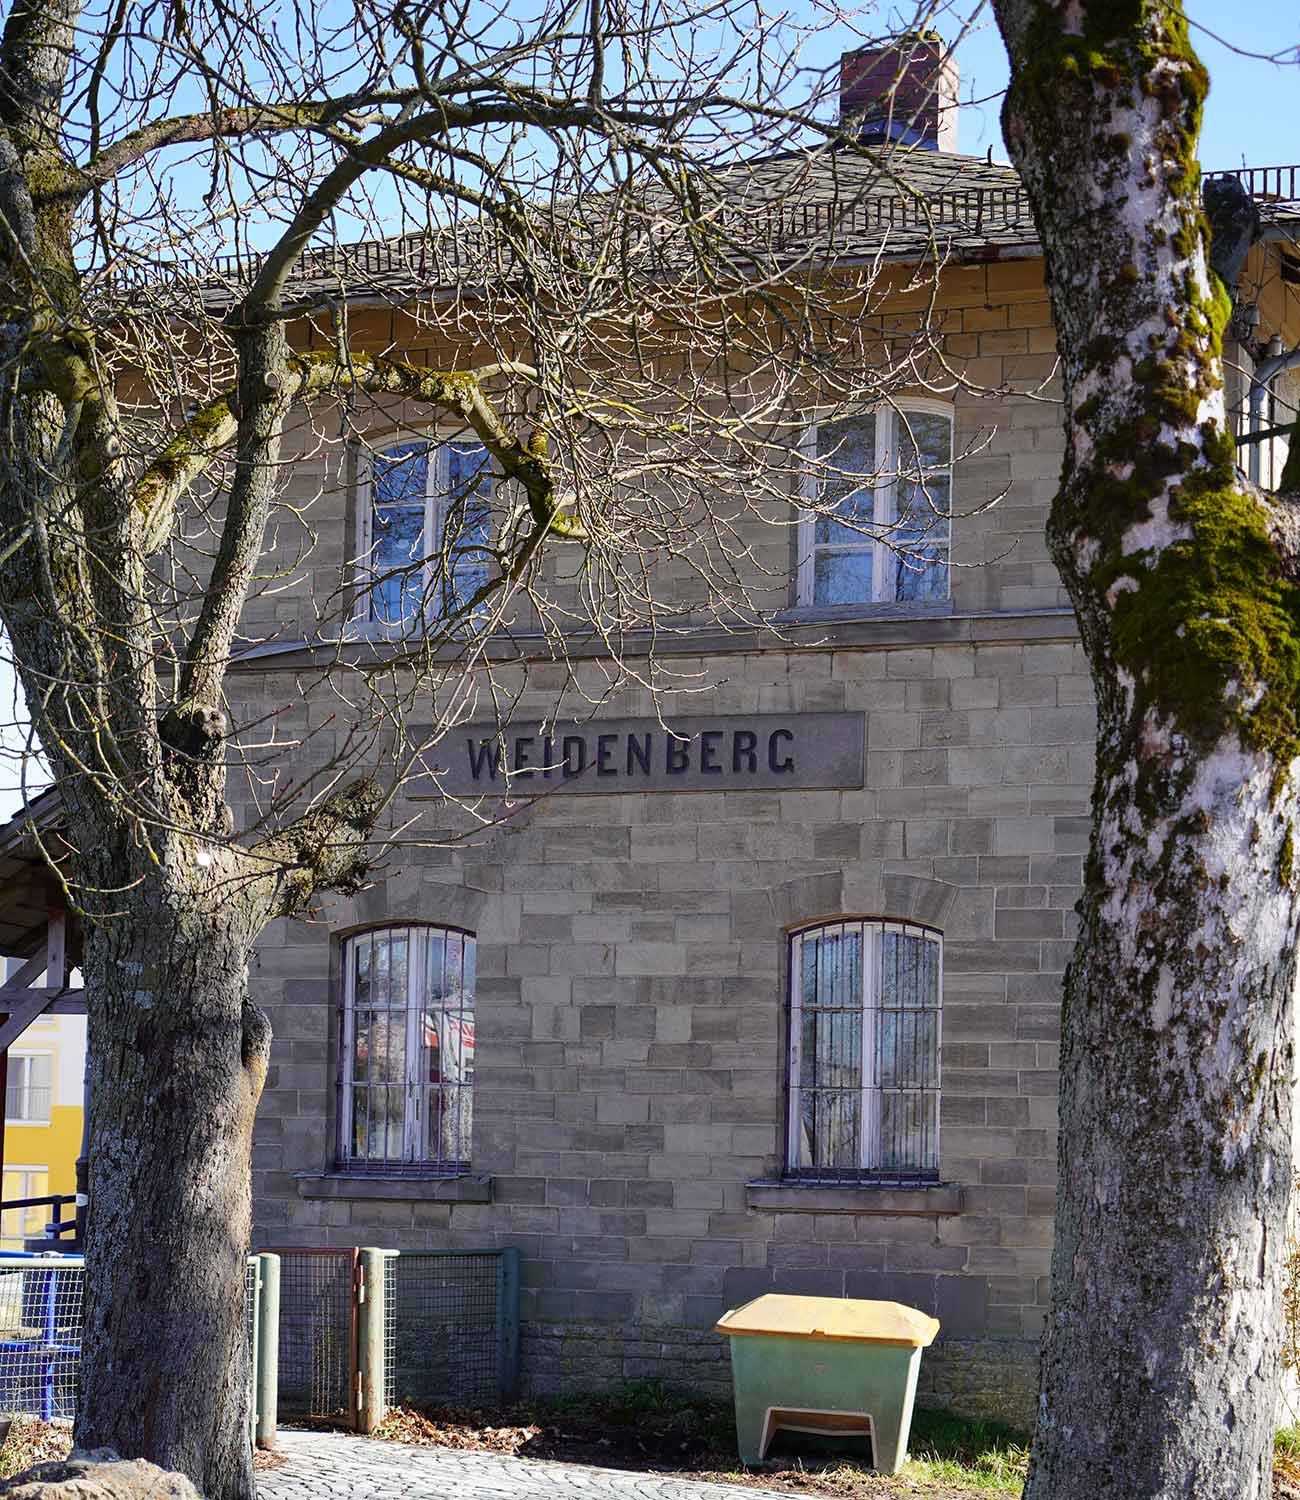 Umgebung Weidenberg